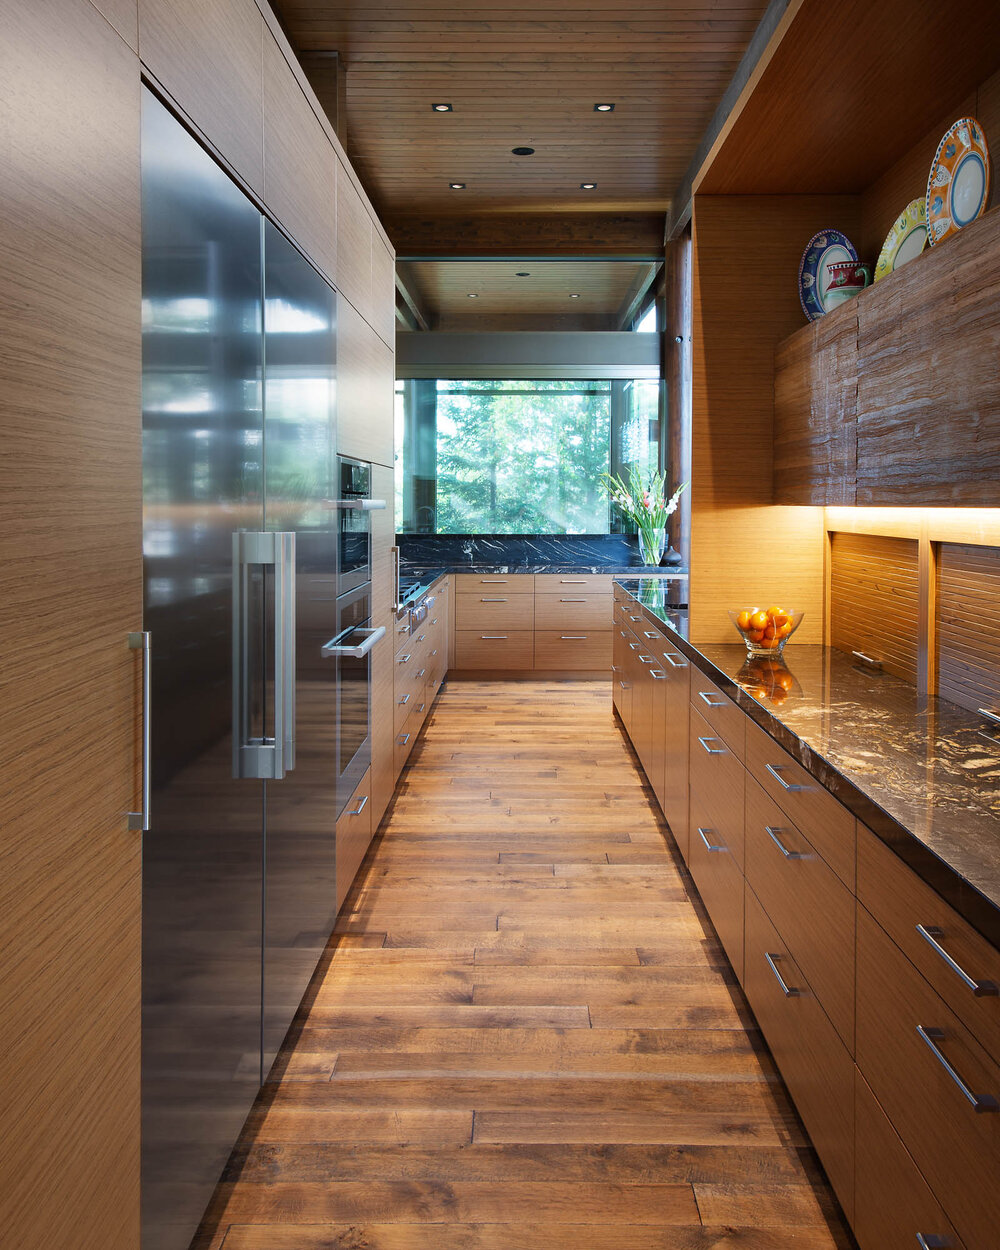 Clearwater-Bay-Cabin-interior-kitchen.jpg